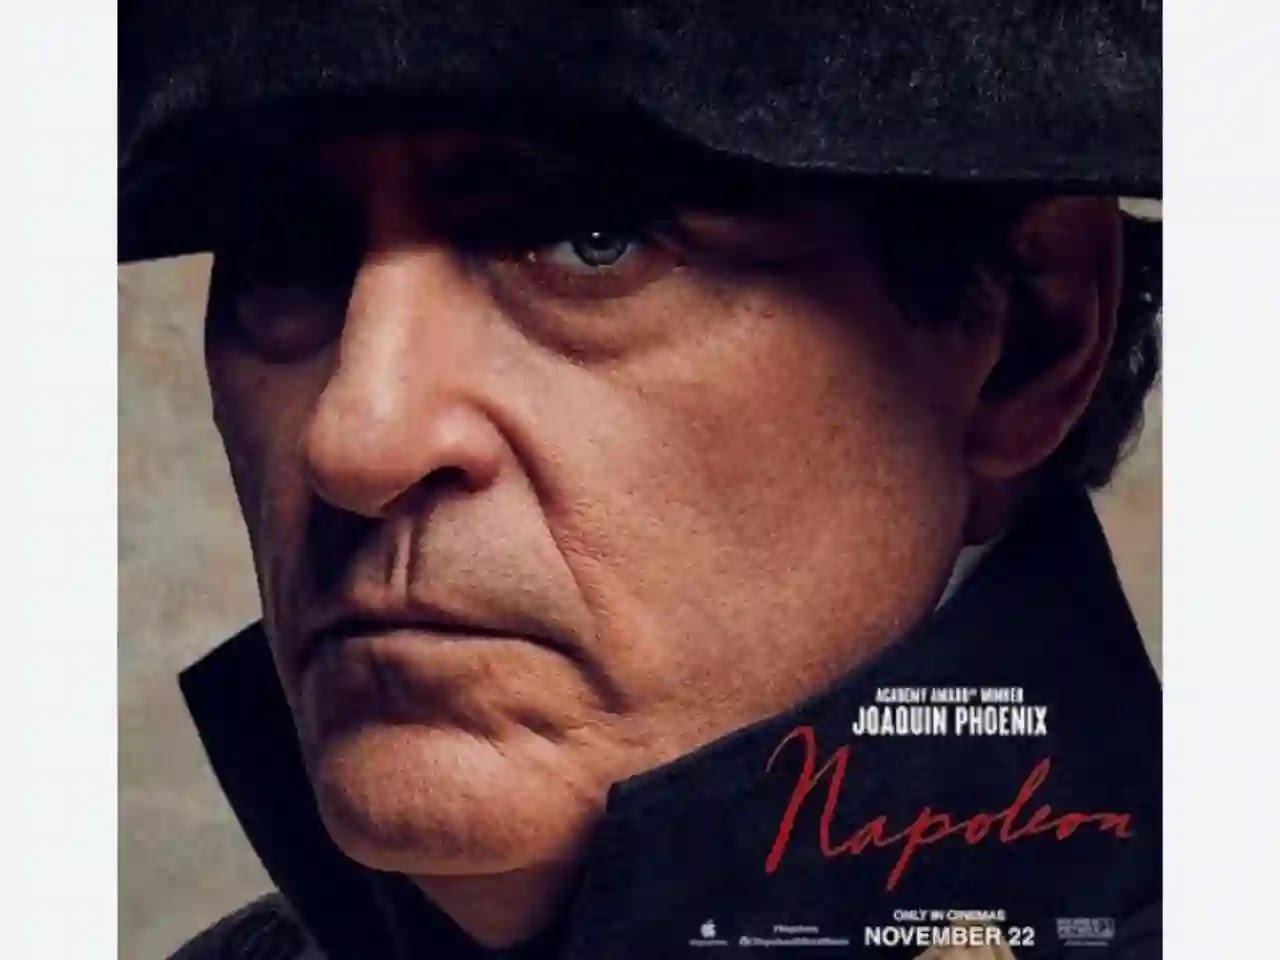 Napoleon Movie Review